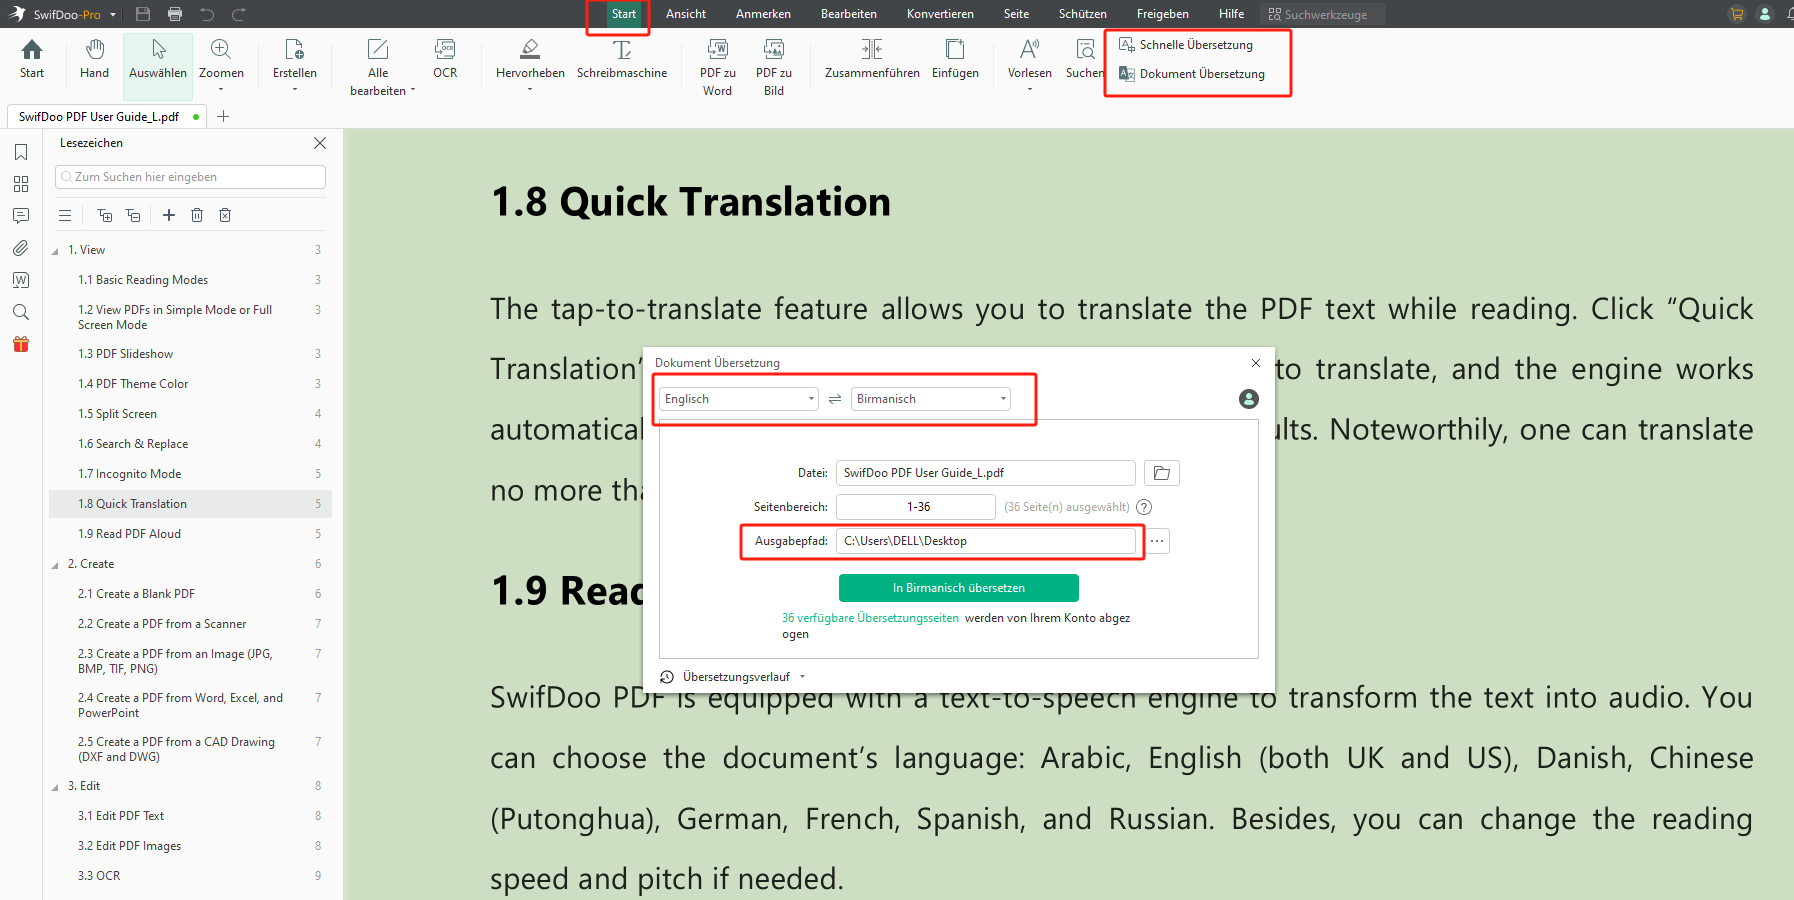 Klicken Sie auf Start > Dokumente Übersetzung und wählen Sie Englisch und Birmanisch als Eingabe- bzw. Ausgabesprache. Wählen Sie dann einen Ausgabepfad, um die übersetzte Datei zu speichern.